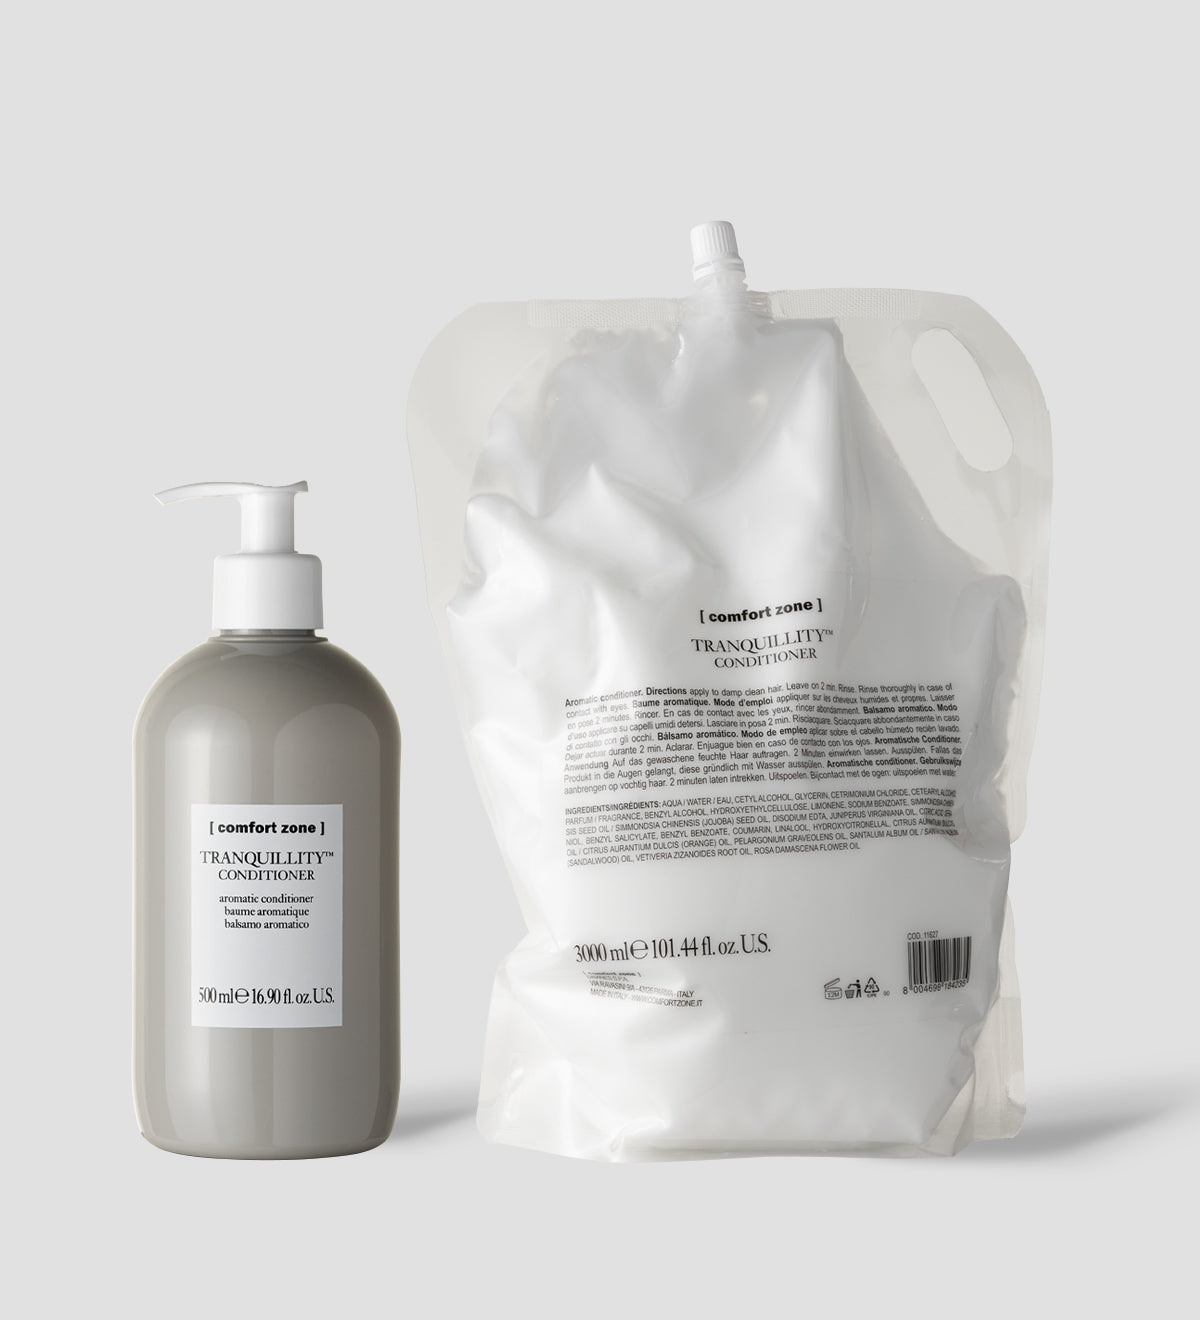 Comfort Zone: SET TRANQUILLITY™ CONDITIONER Balsamo aromatico 3L ricaricabile con dispenser-TRANQUILLITY
